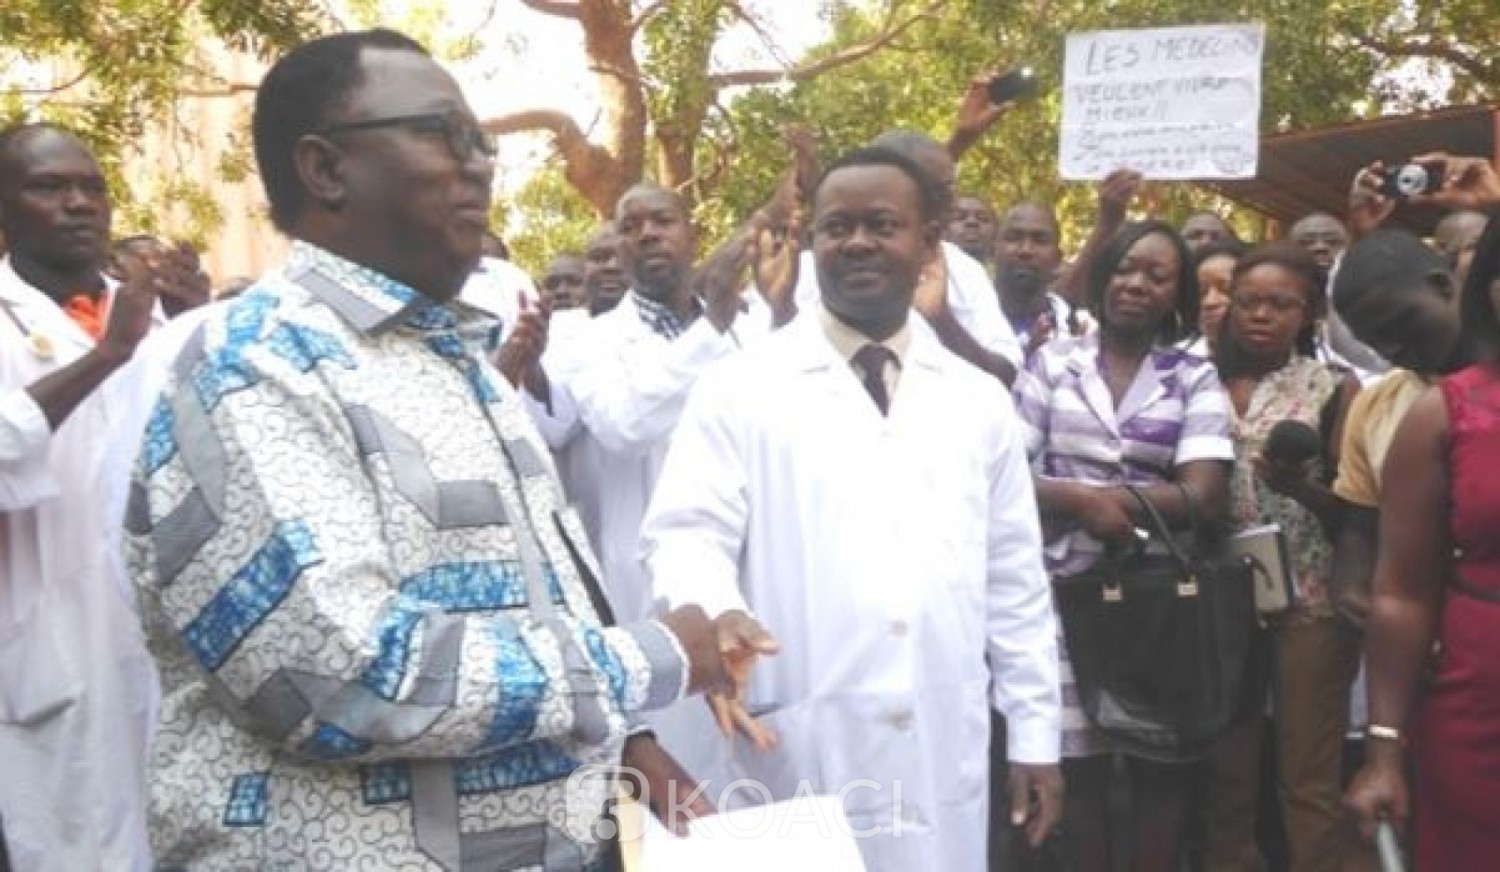 Burkina Faso: Santé, des organisations appellent à une reprise dialogue social avec le gouvernement